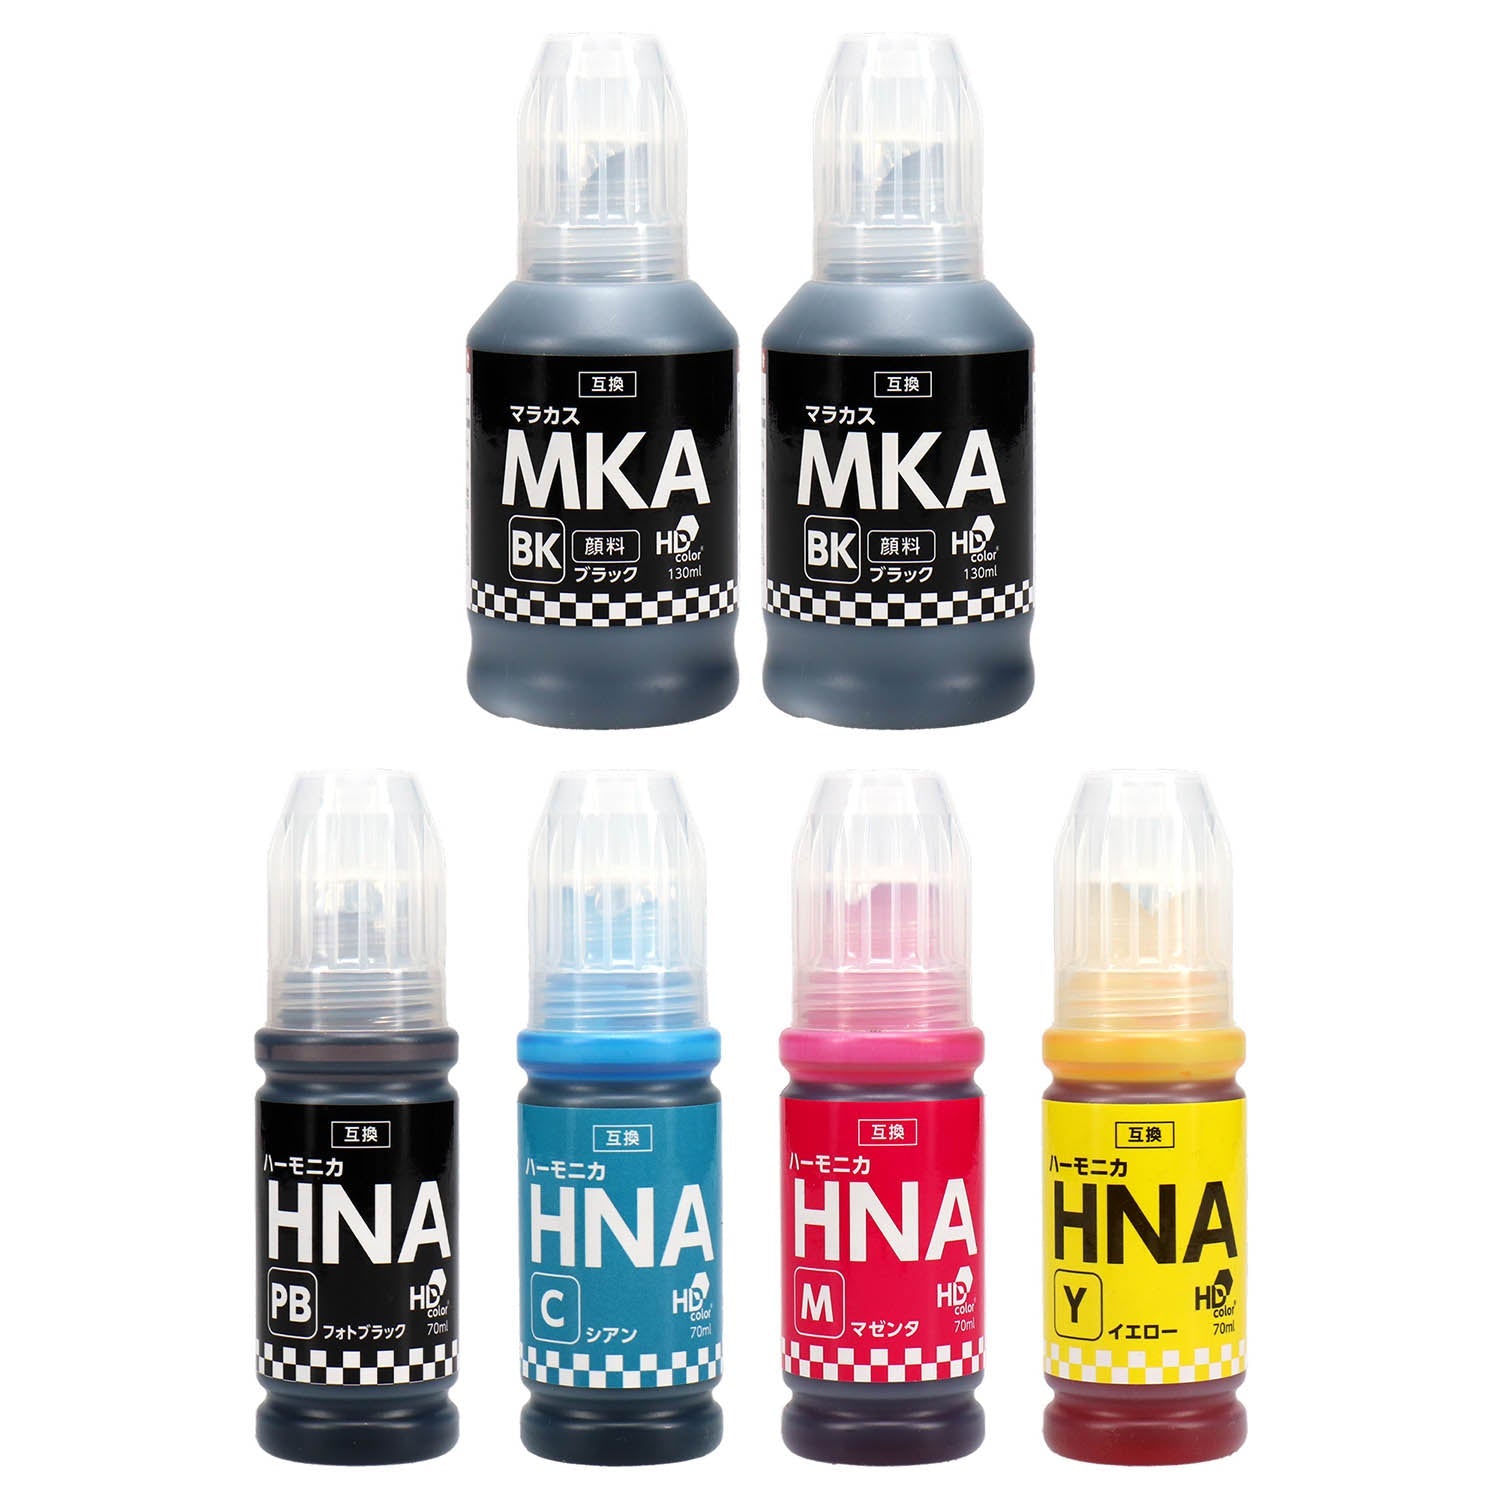 エプソン用 MKA-HNA (マラカス・ハーモニカ) 互換インクボトル 5色セット